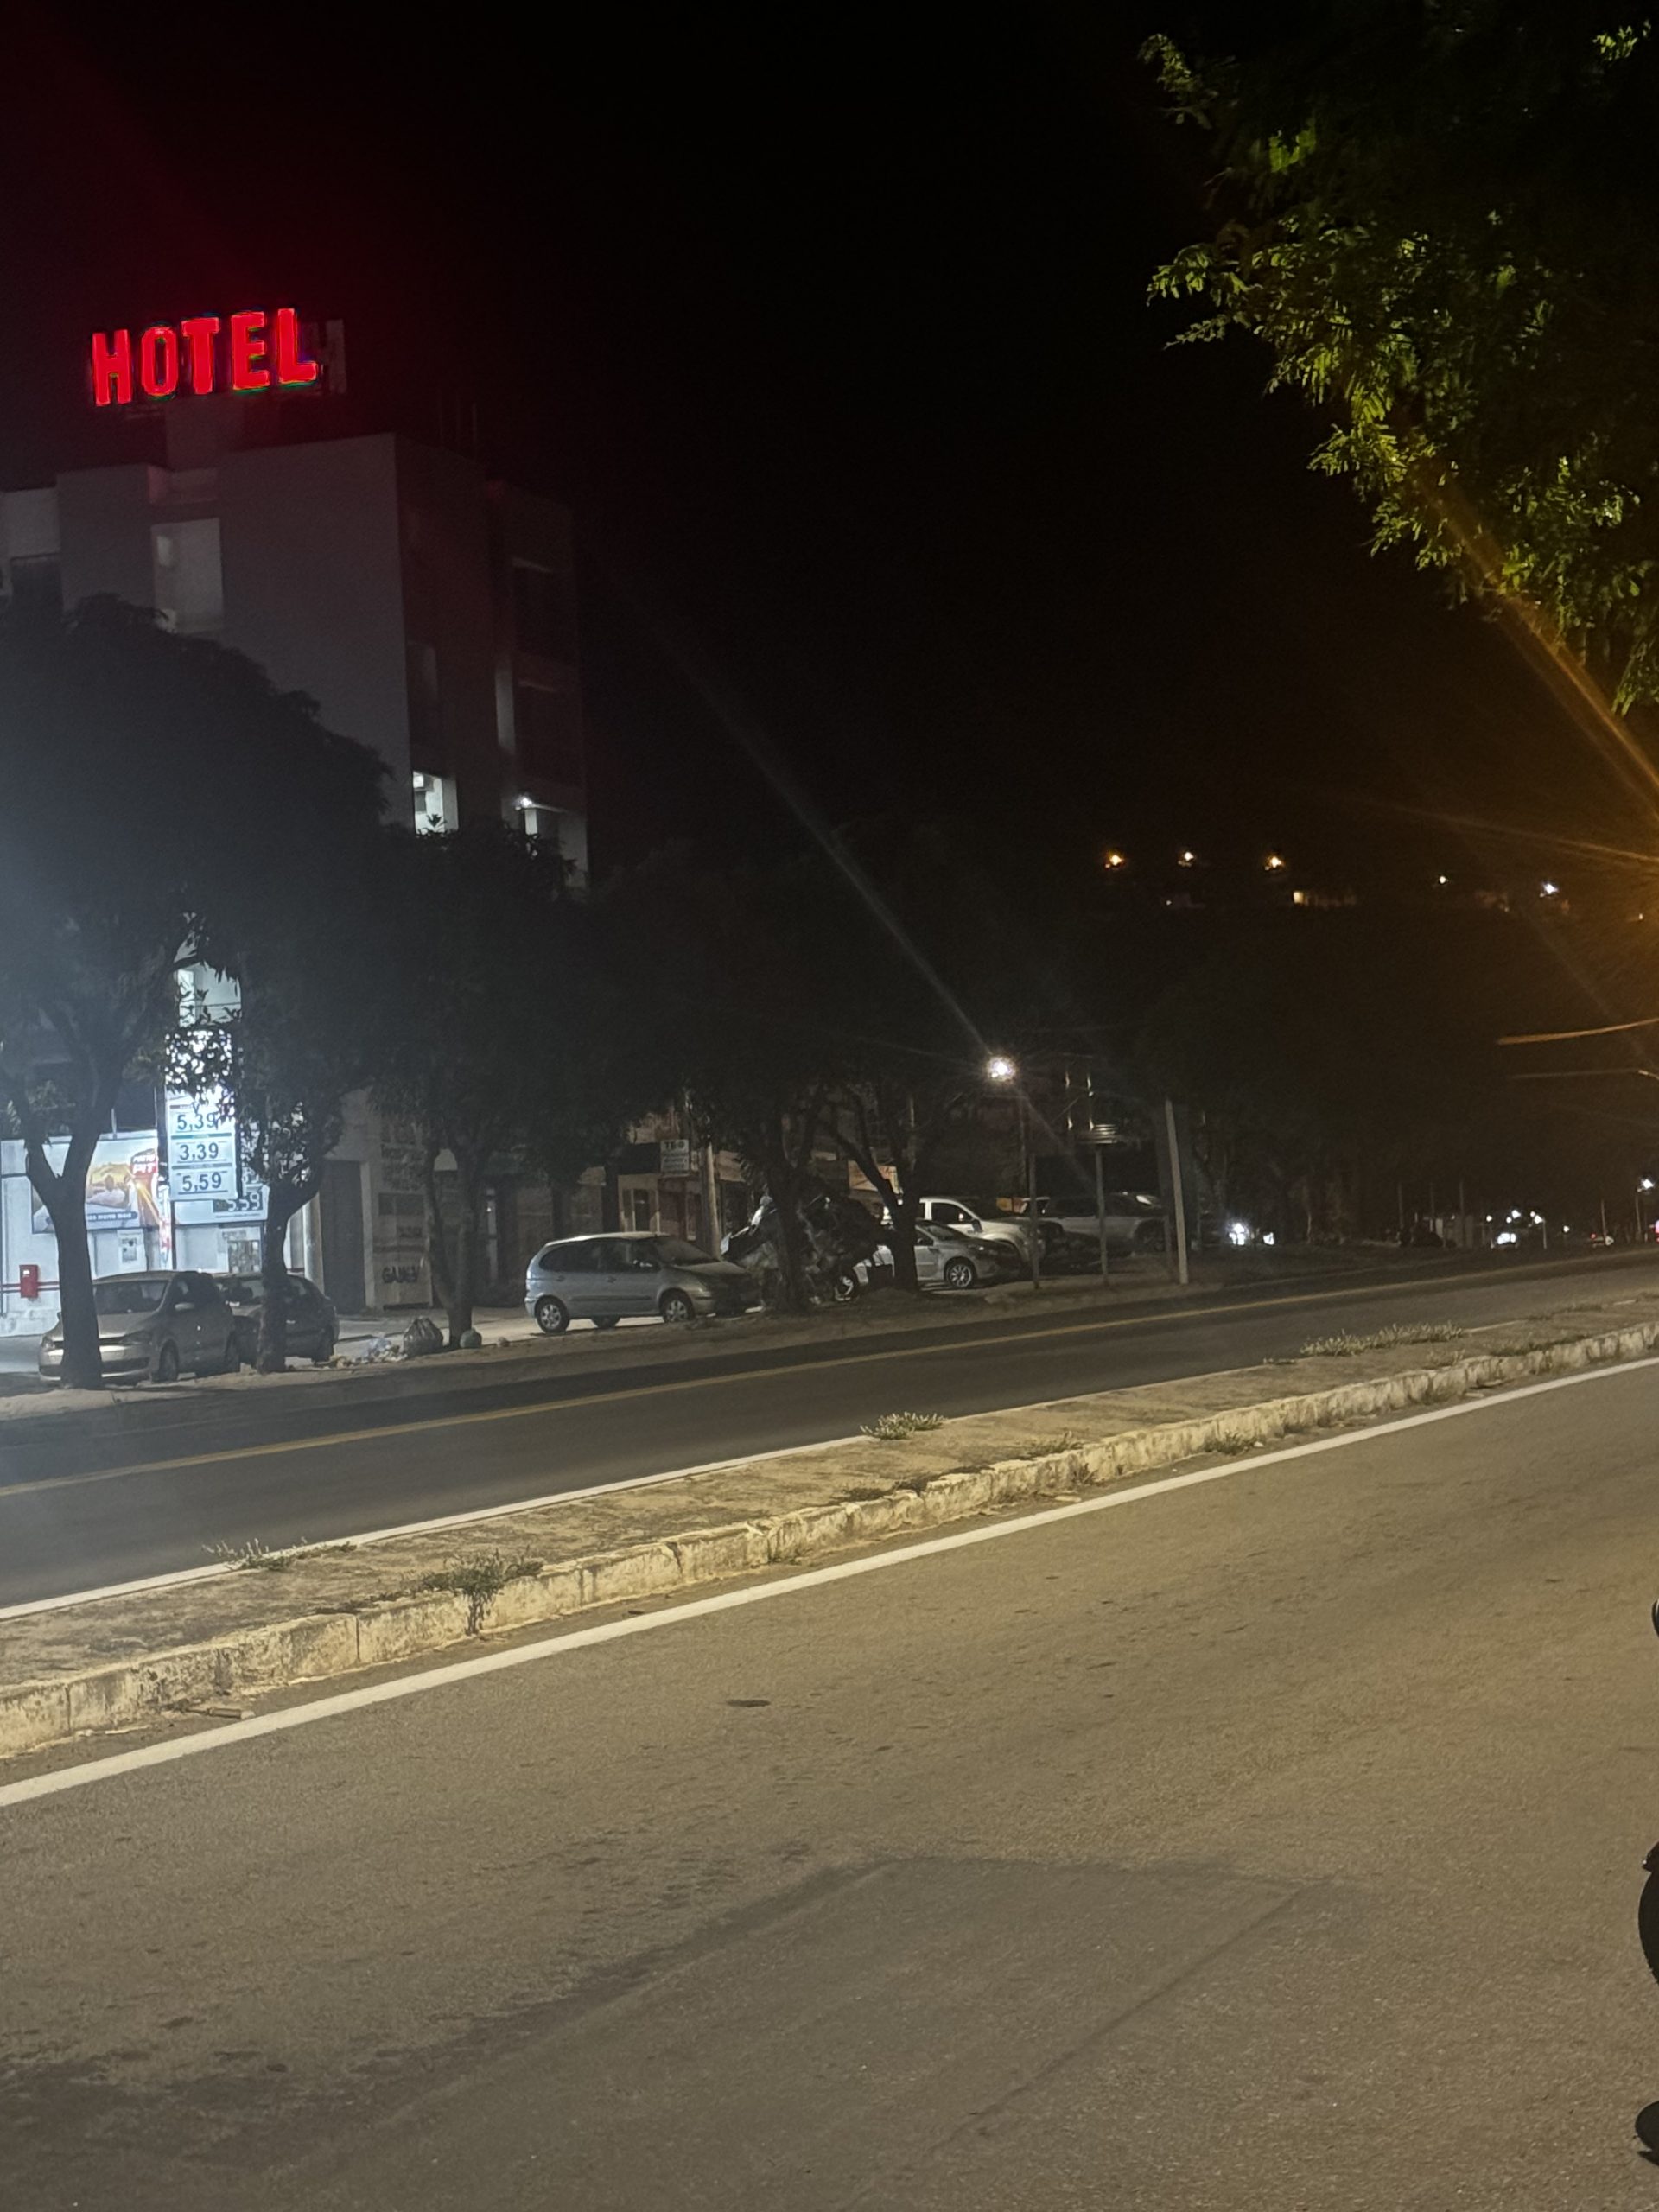 Madrugada tensa em T. Otoni: um rapaz de 23 anos é baleado na Vila Pedrosa, o segundo durante ocupação policial